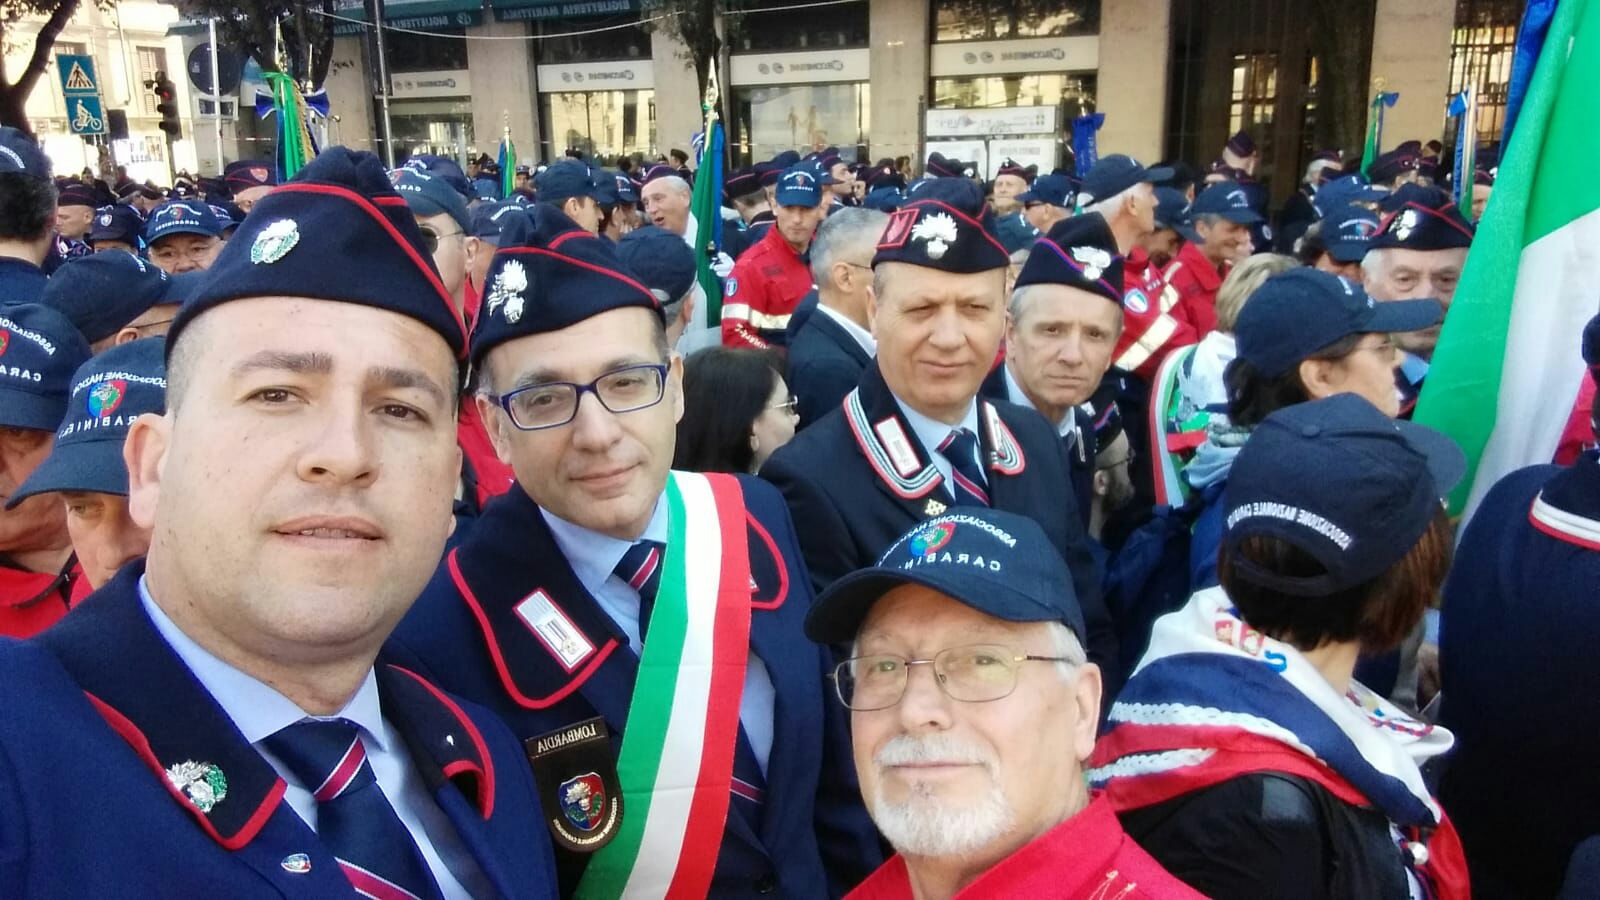 Adunata nazionale Anc a Verona col sindaco di Cornate Quadri